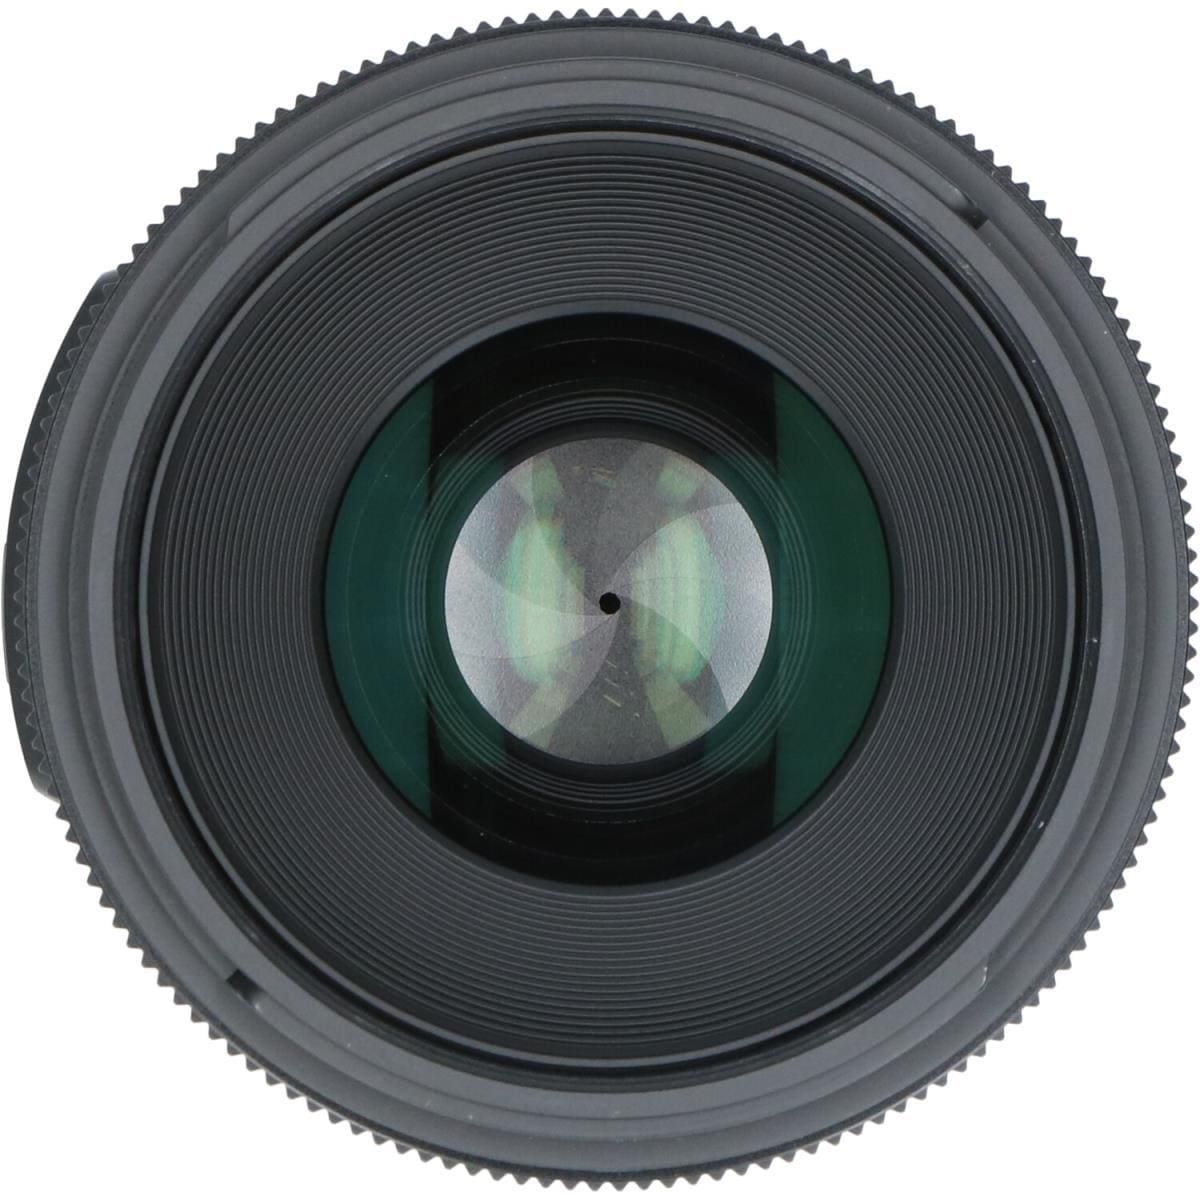 SIGMA Nikon 30mm F1.4DC HSM (A)